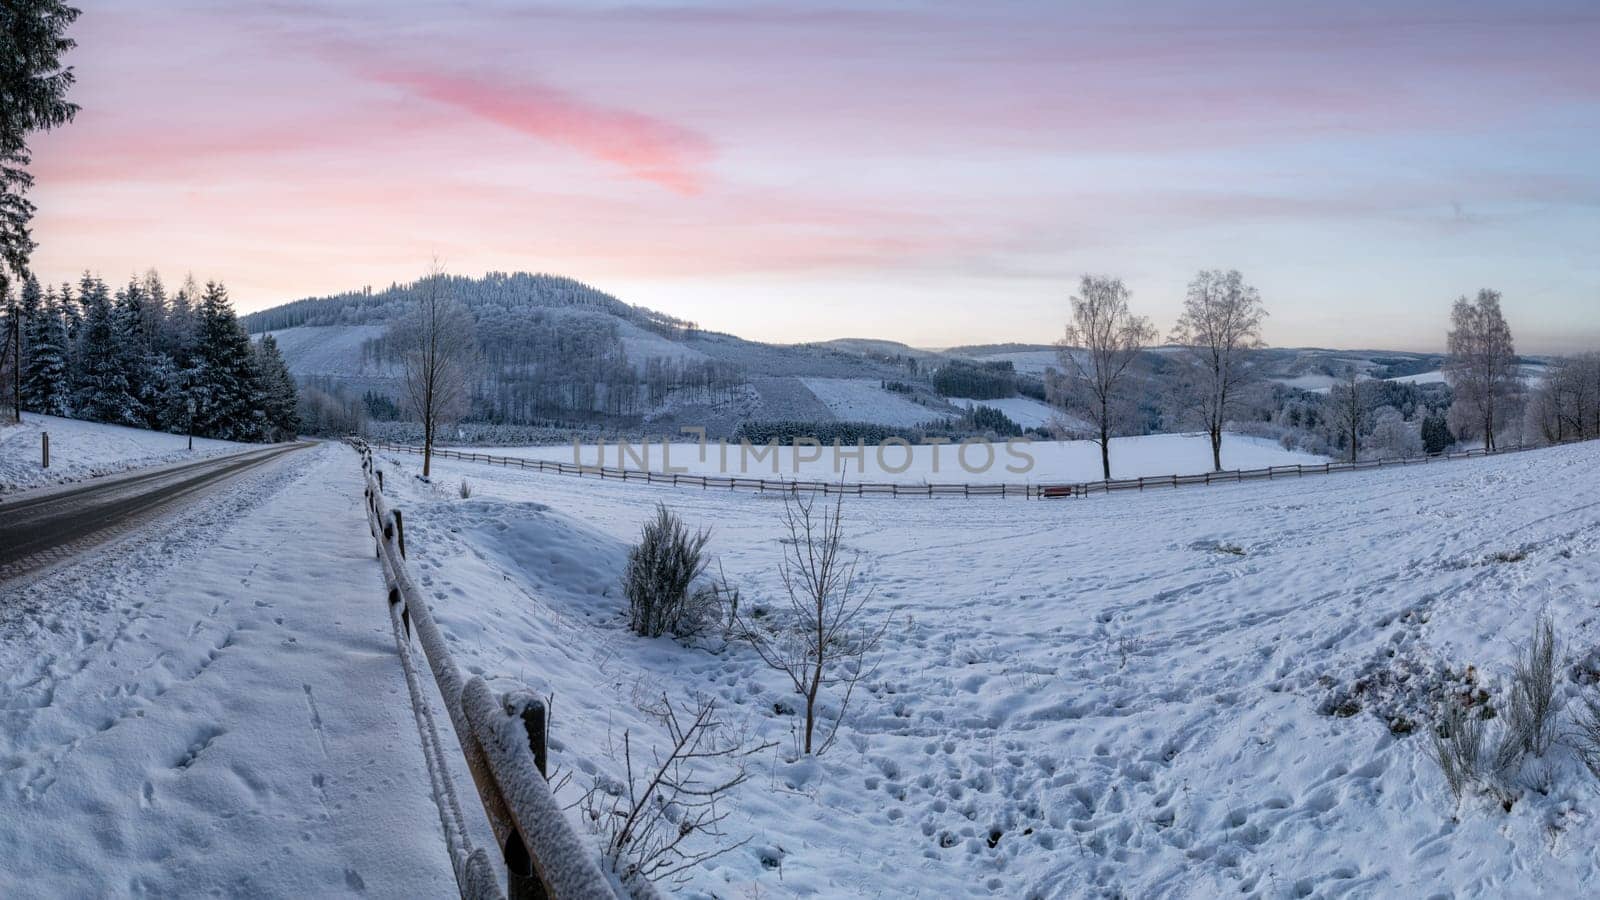 Winter landscape, Schmallenberg, Sauerland, Germany by alfotokunst